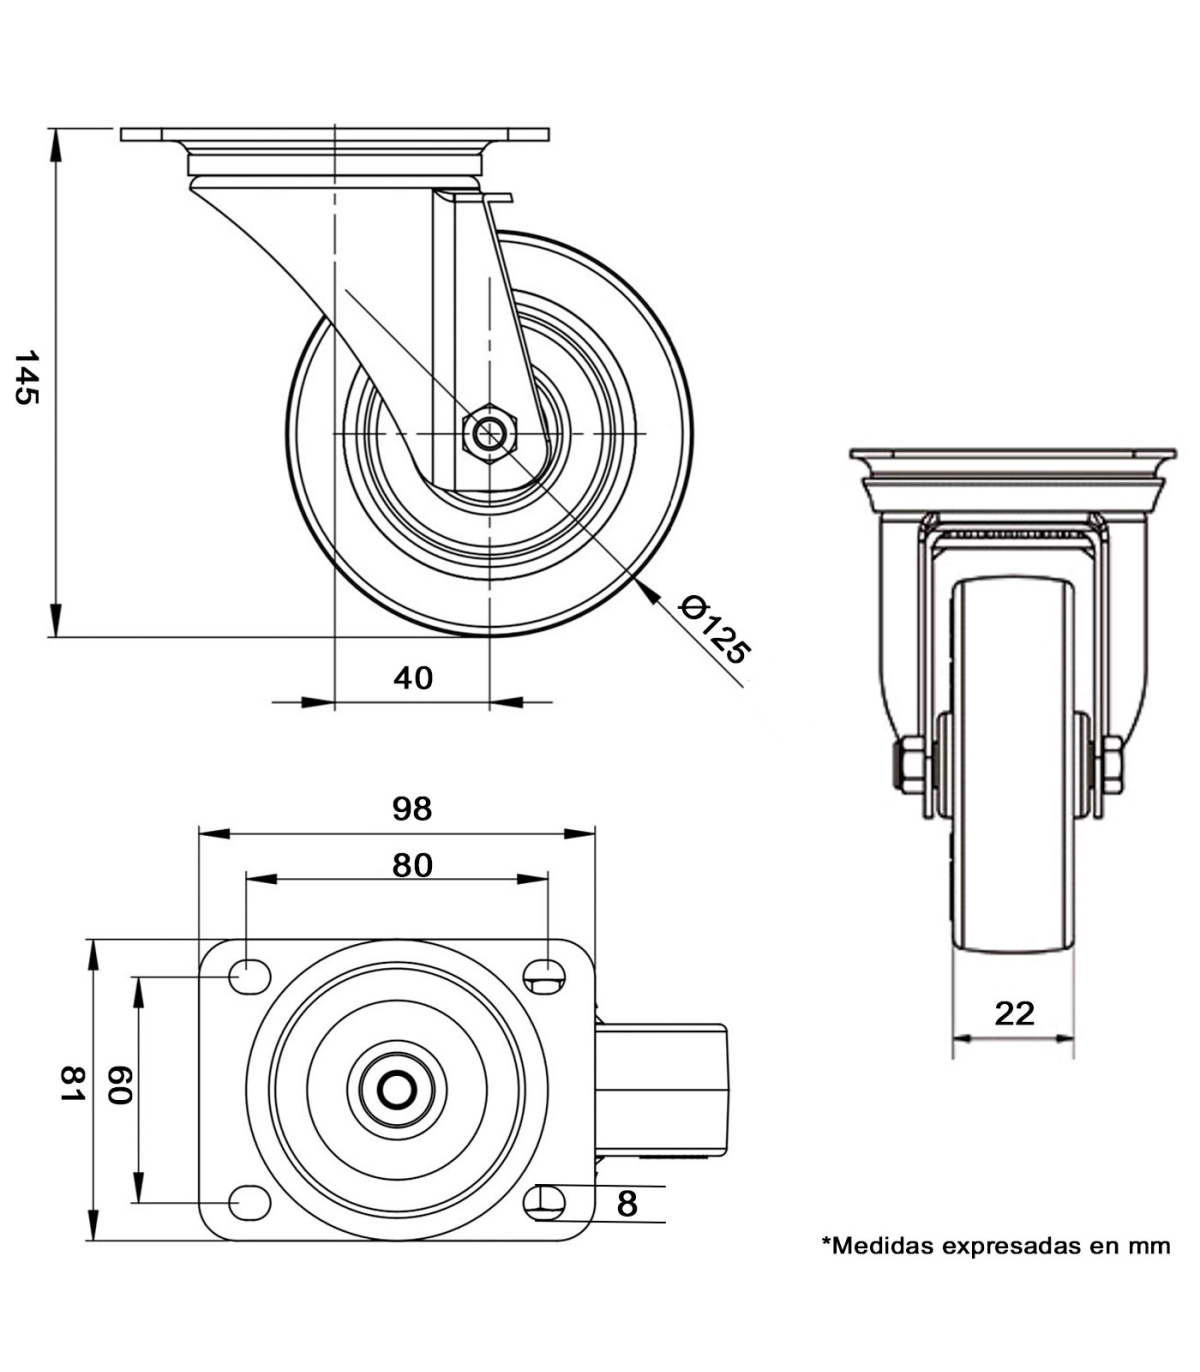 Tradineur - Rueda giratoria para muebles, goma y hierro, incluye placa de  montaje, rueda de transporte para cargas pesadas, indu